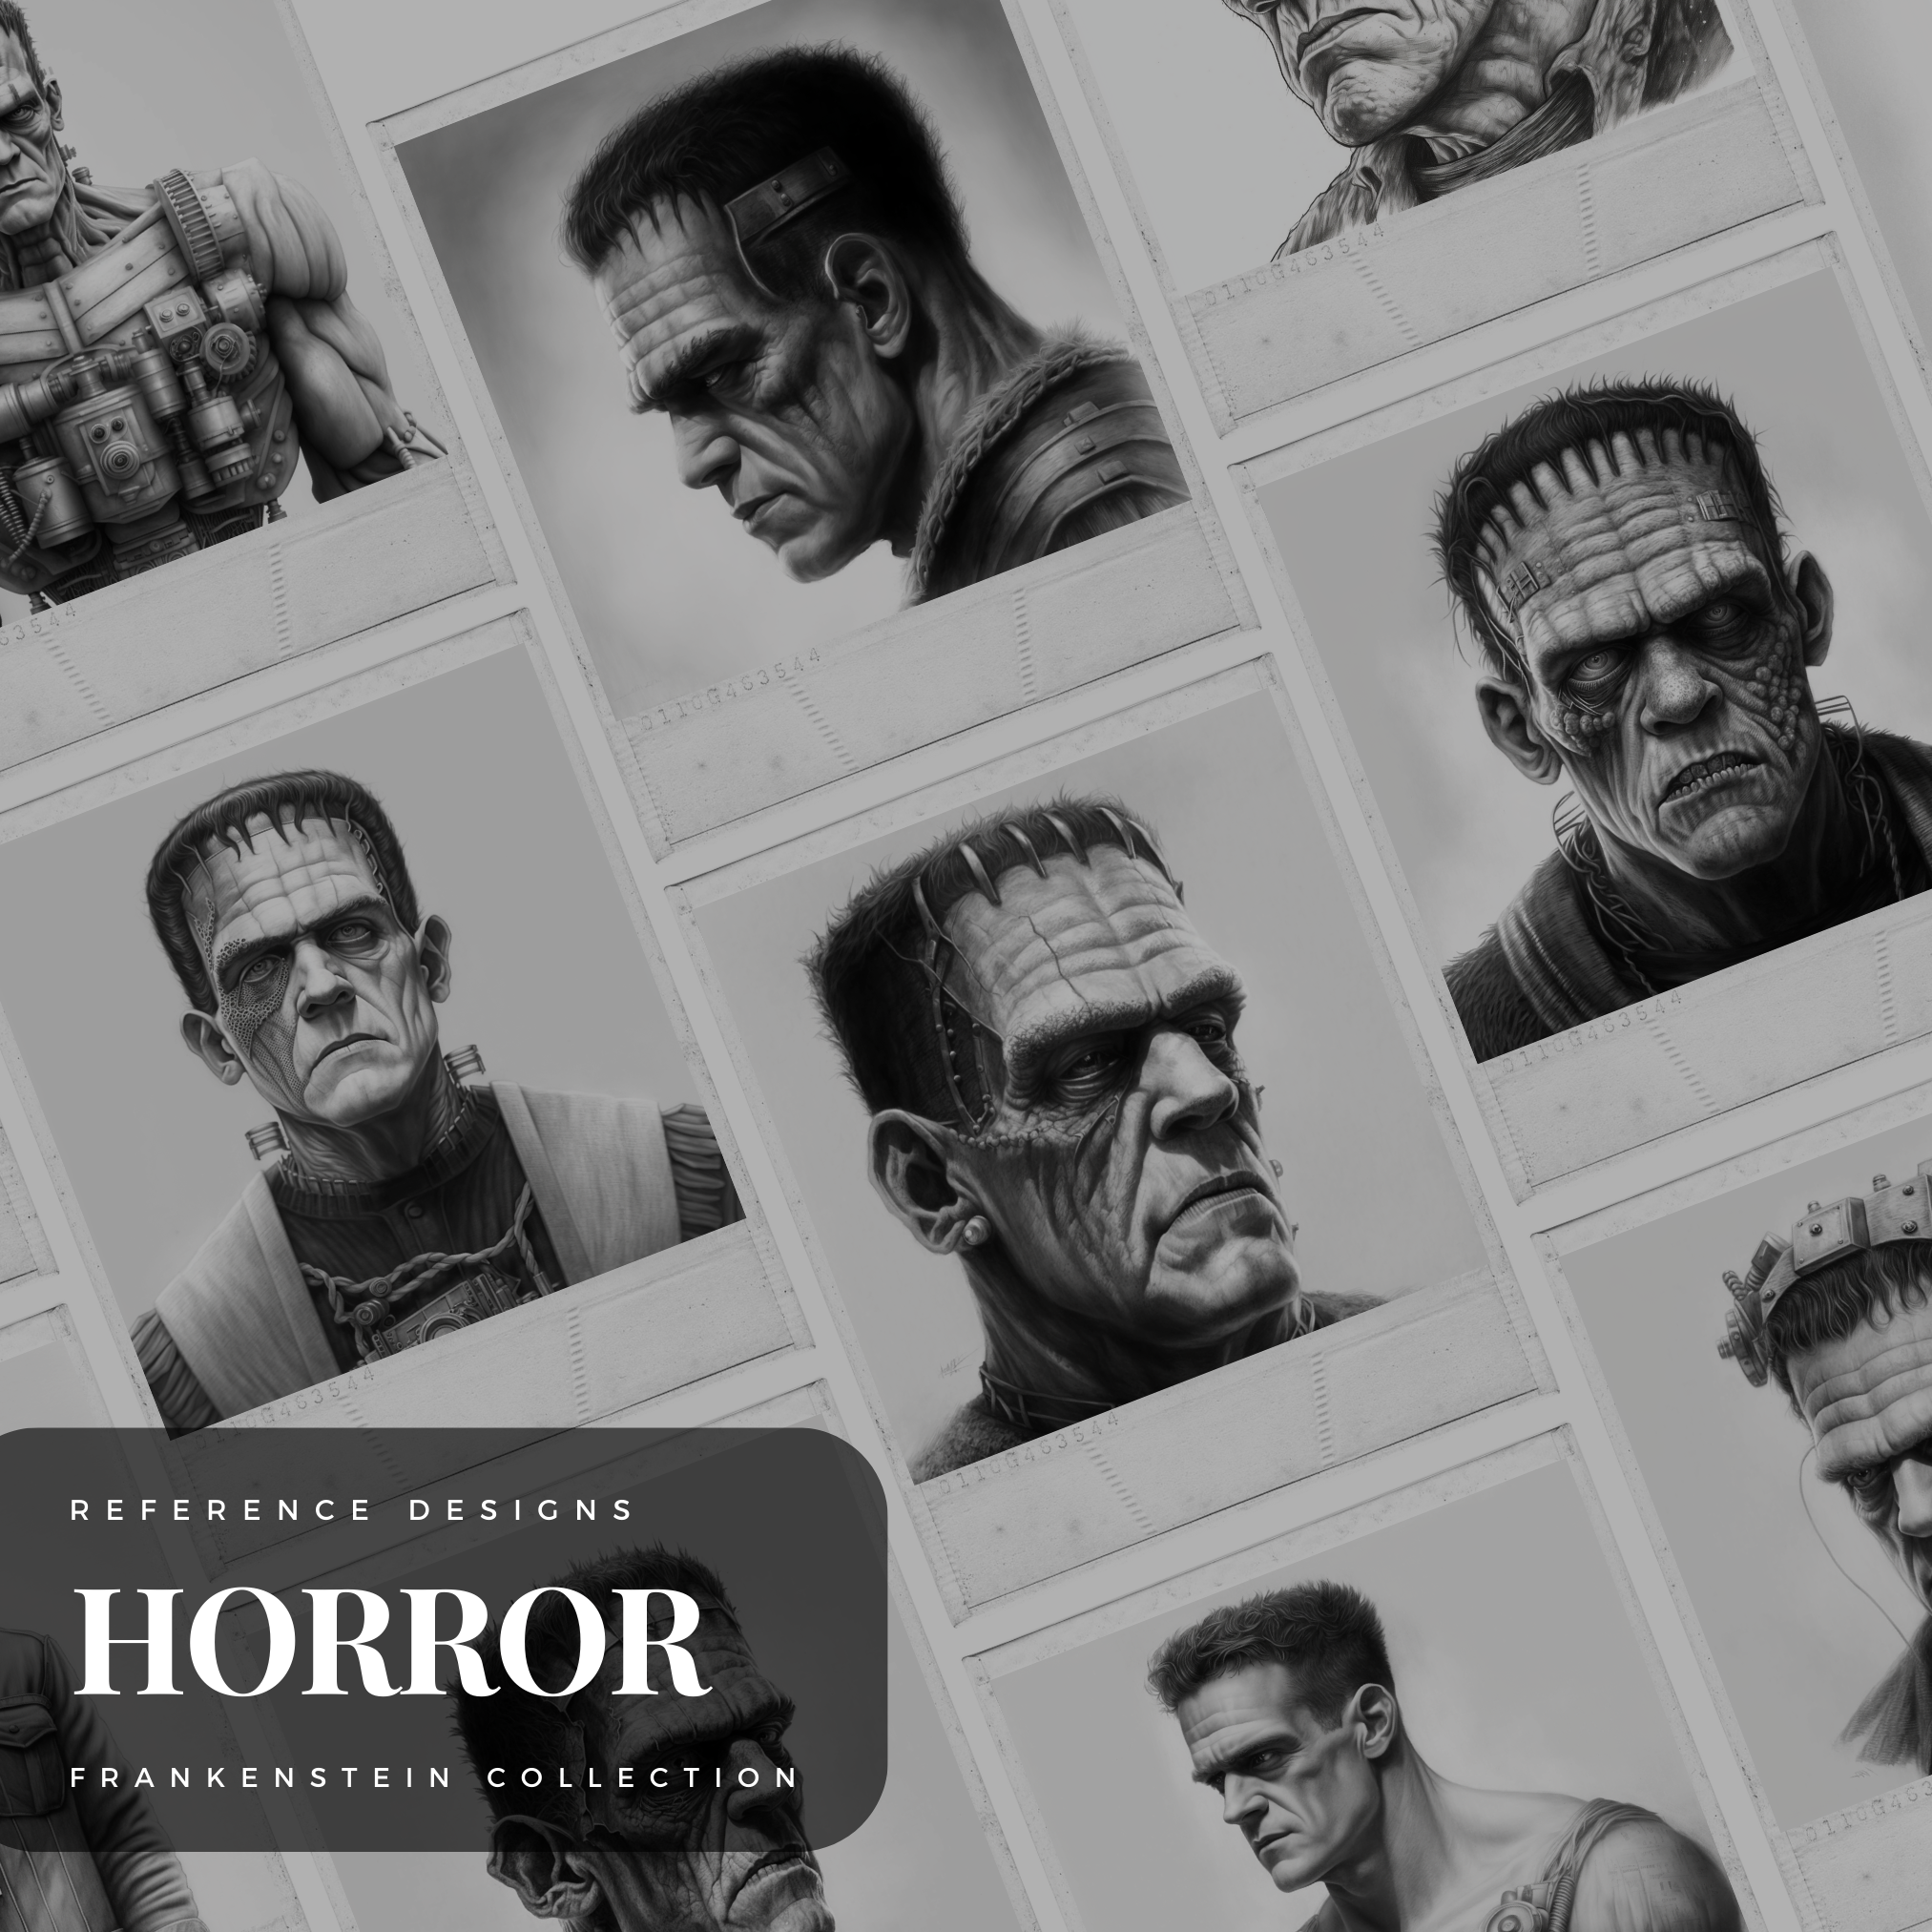 Frankenstein Monster Digital Horror Design Collection: 50 Procreate & Sketchbook Images